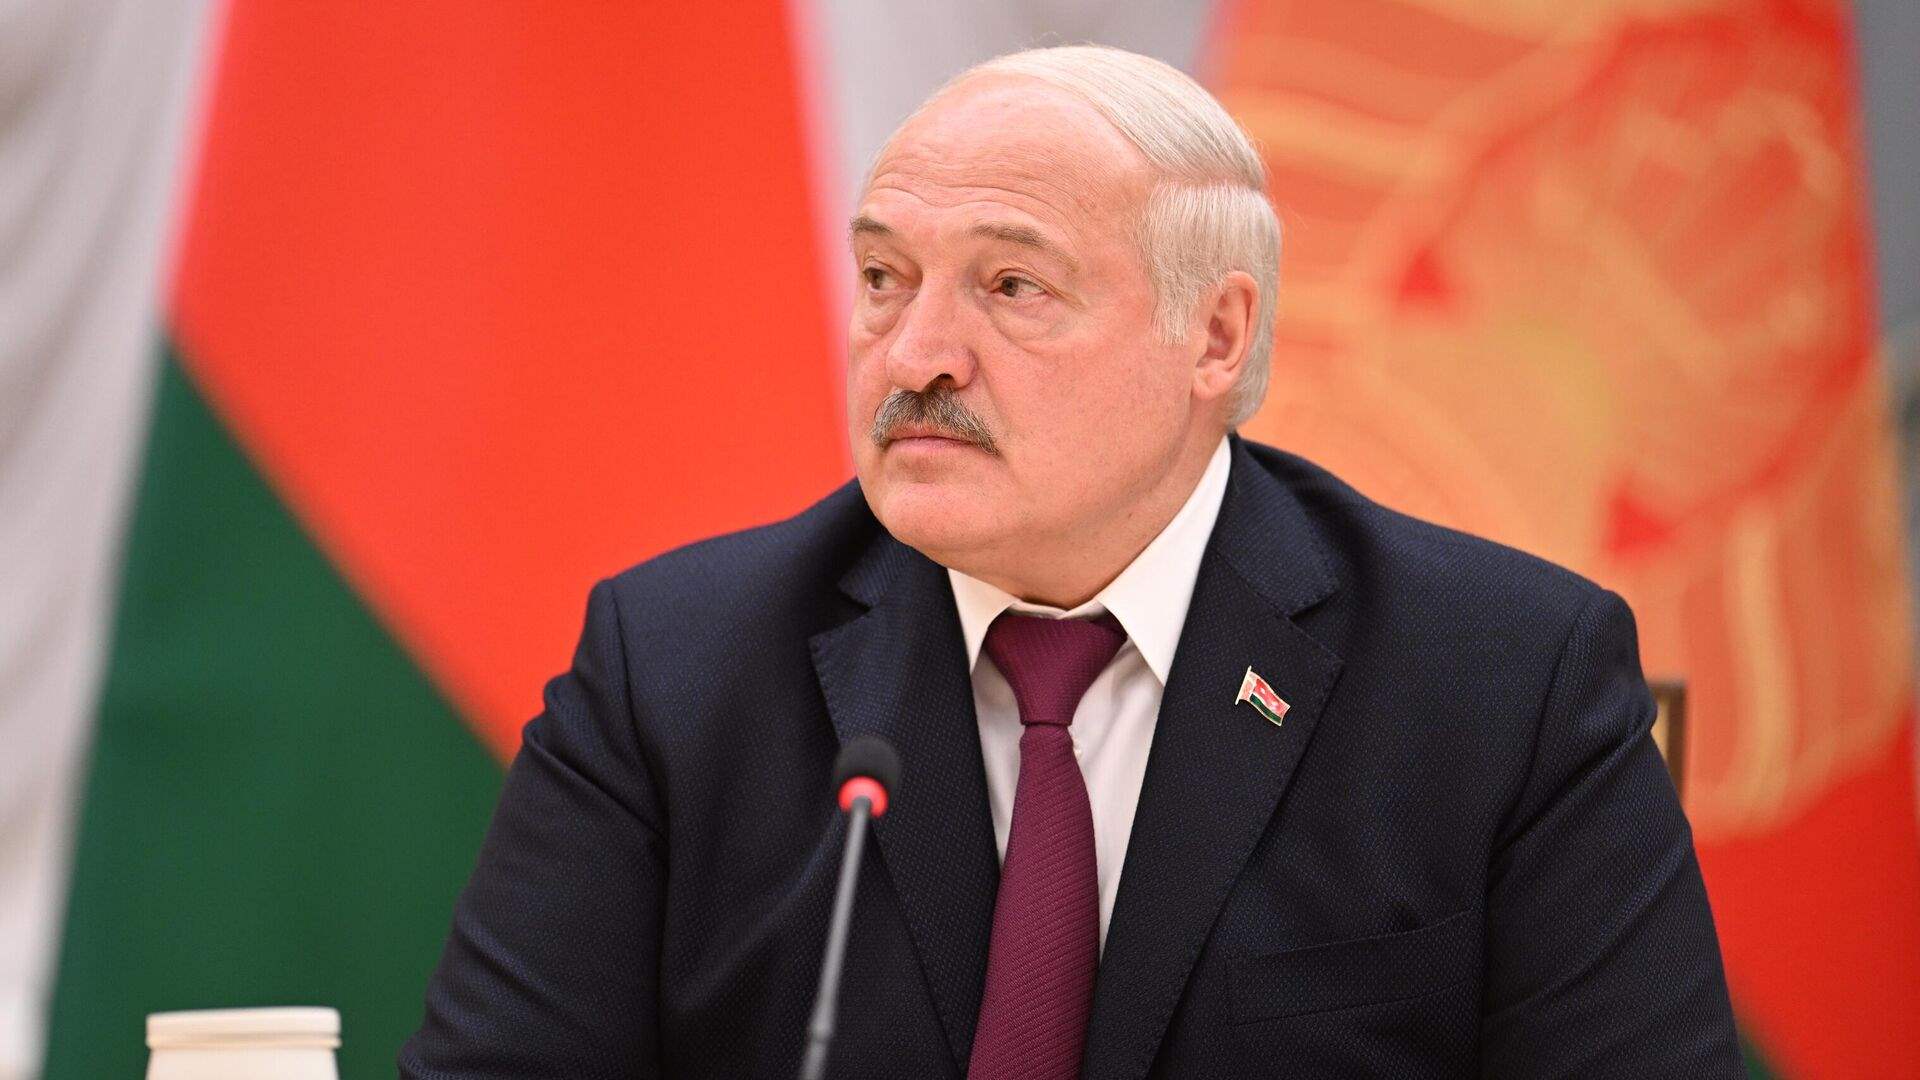  الرئيس البيلاروسي: بريغوجين ليس في بيلاروسيا بل في بطرسبرغ بروسيا 